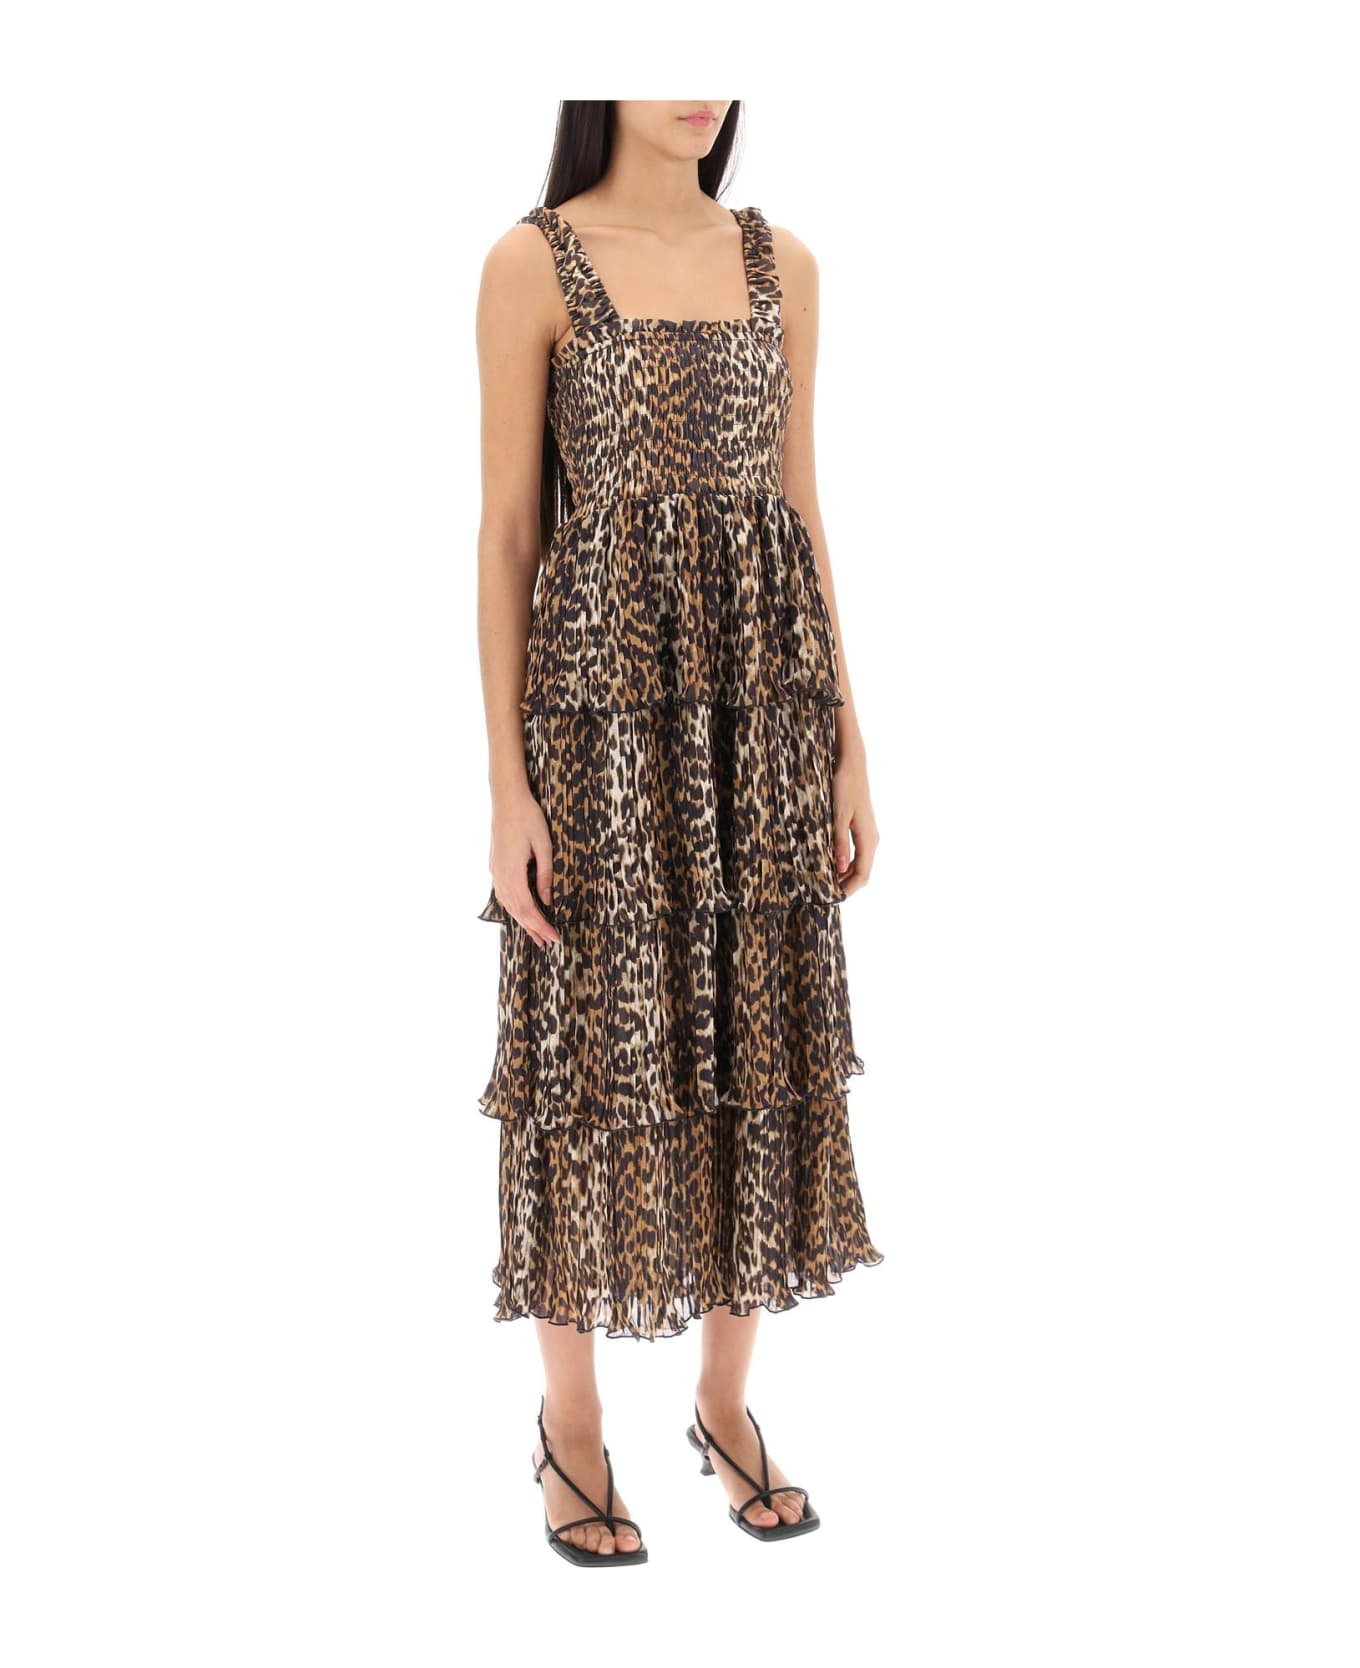 Ganni Leopard Print Midi Dress - Almond Milk